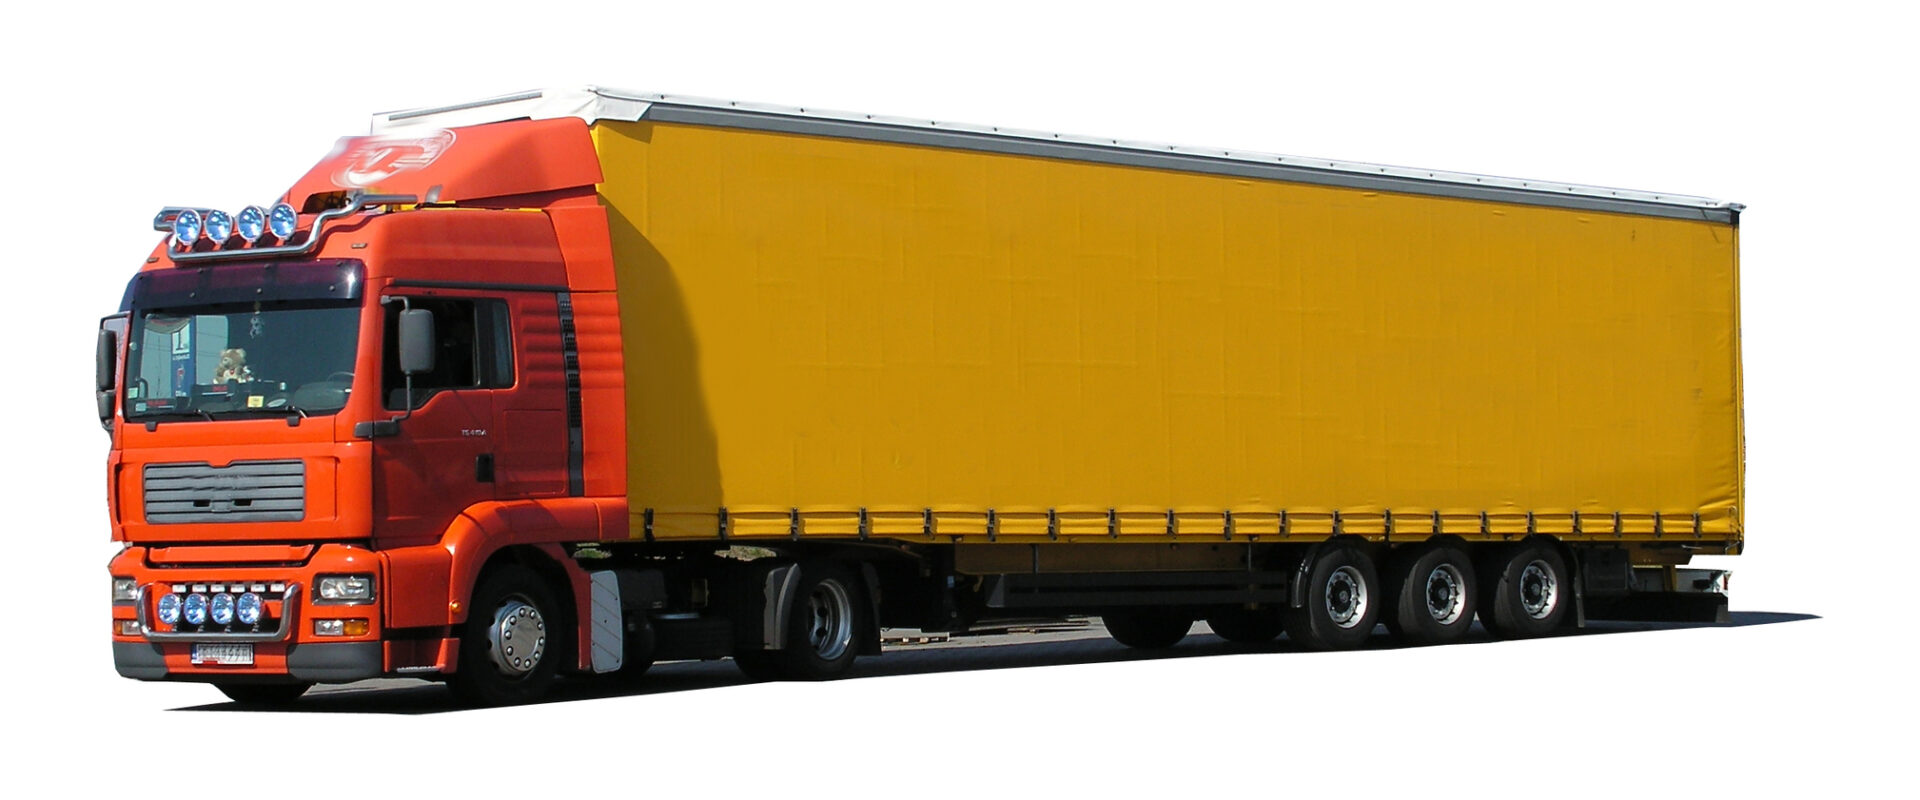 Assistance dla pojazdów ciężarowych w kraju i za granicą